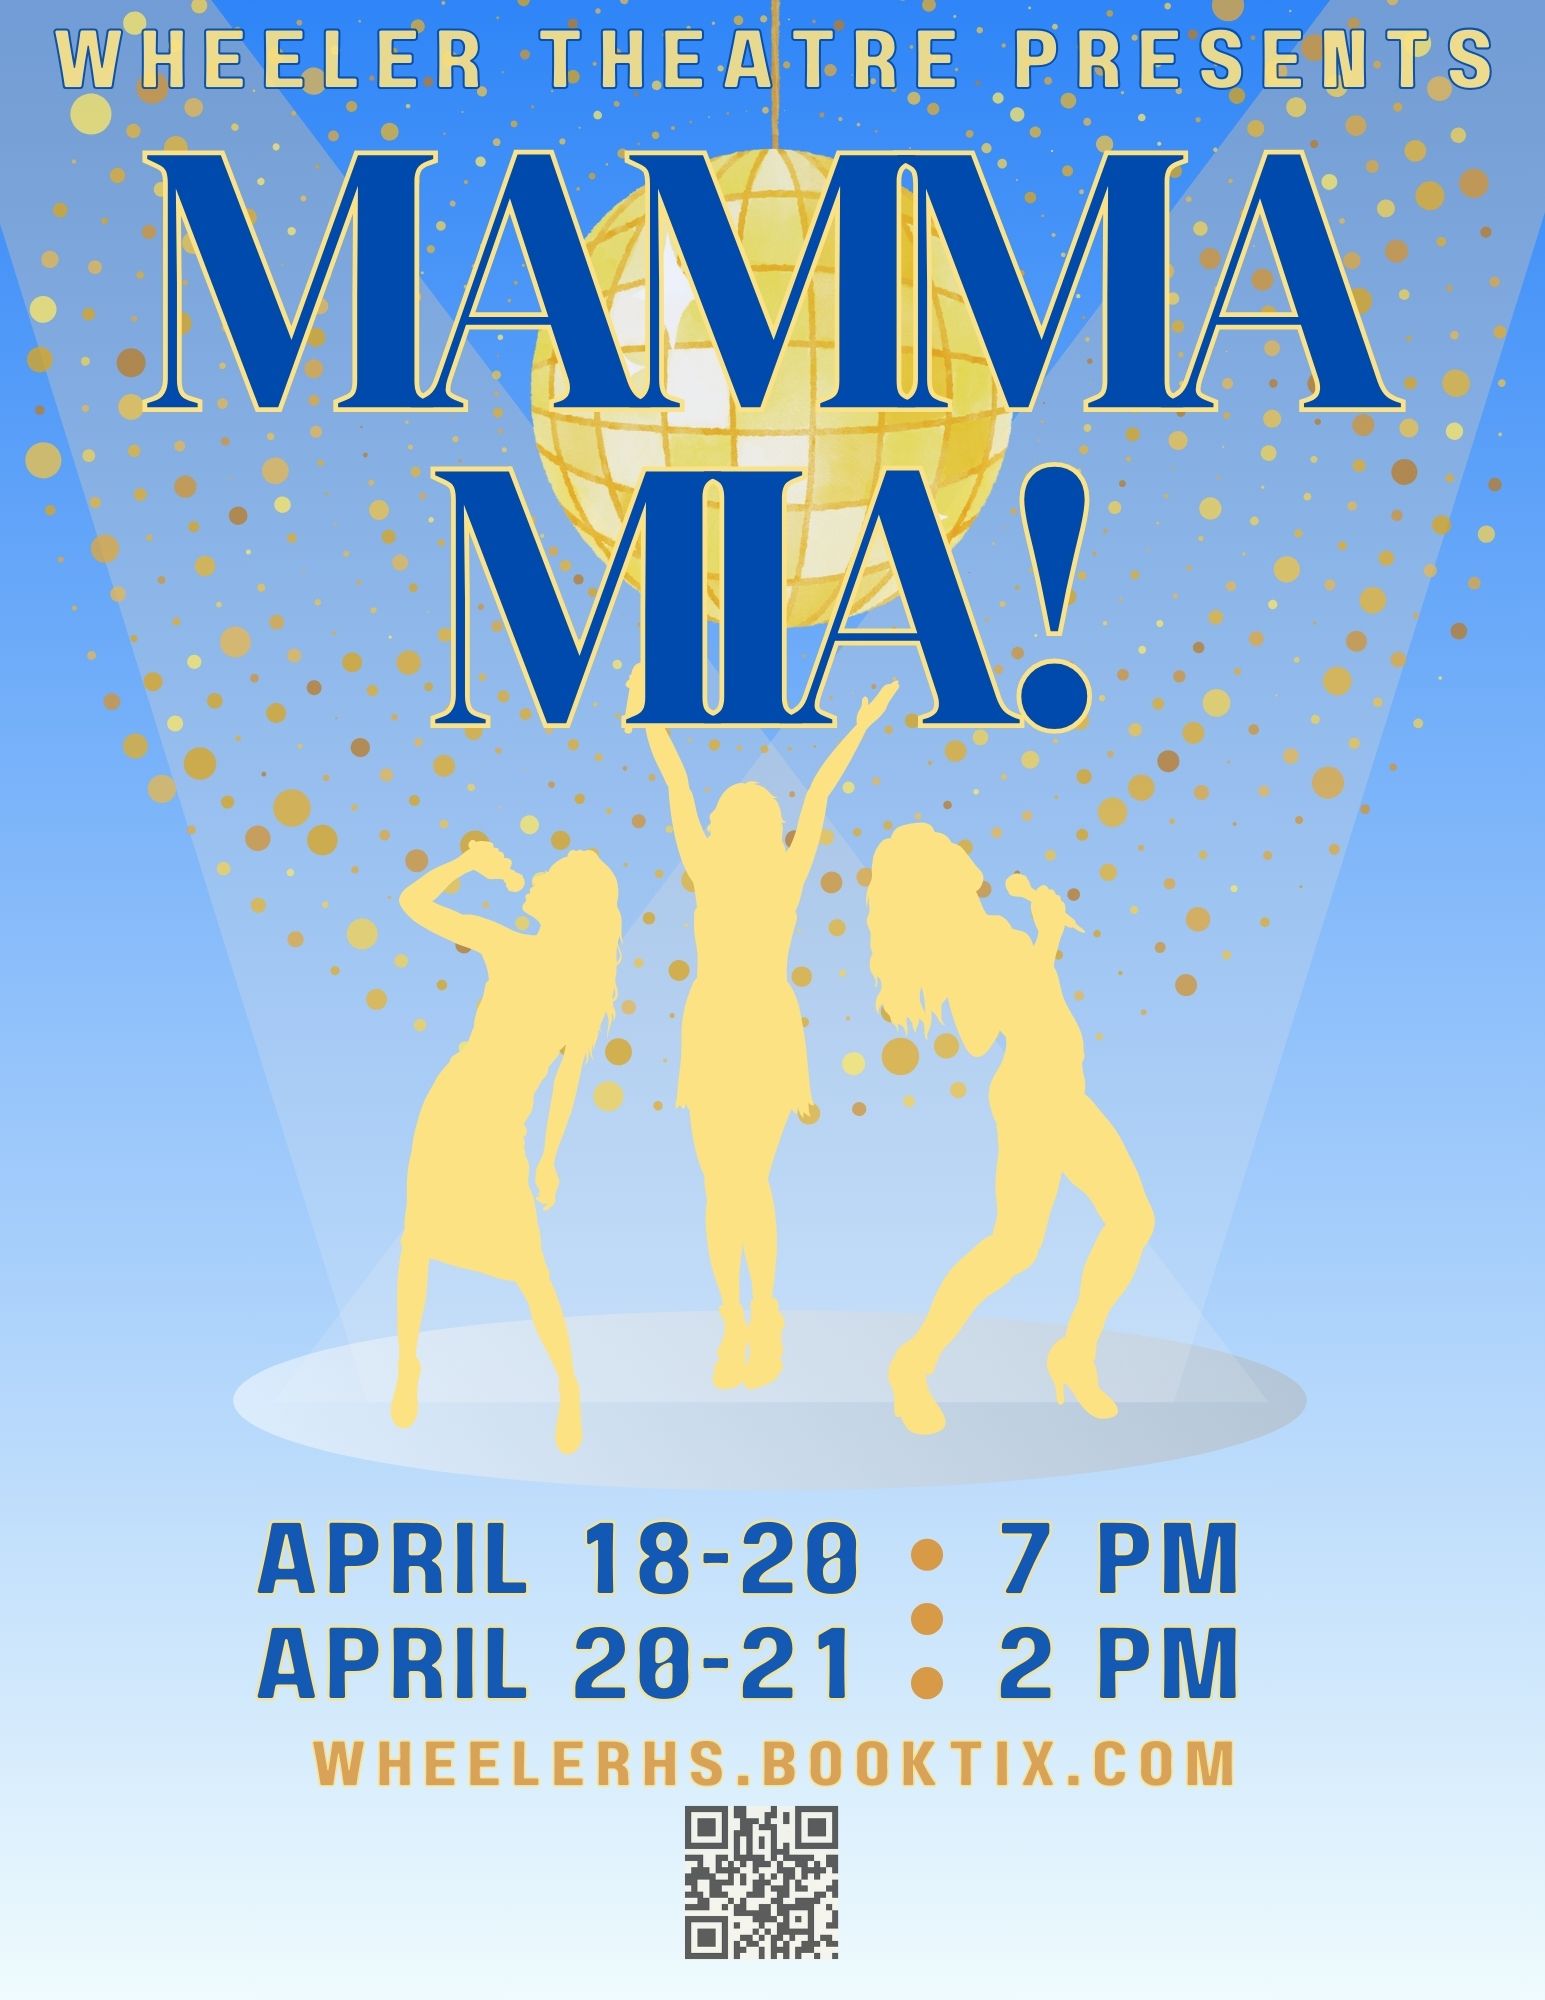 Wheeler Theatre Presents "Mamma Mia!"